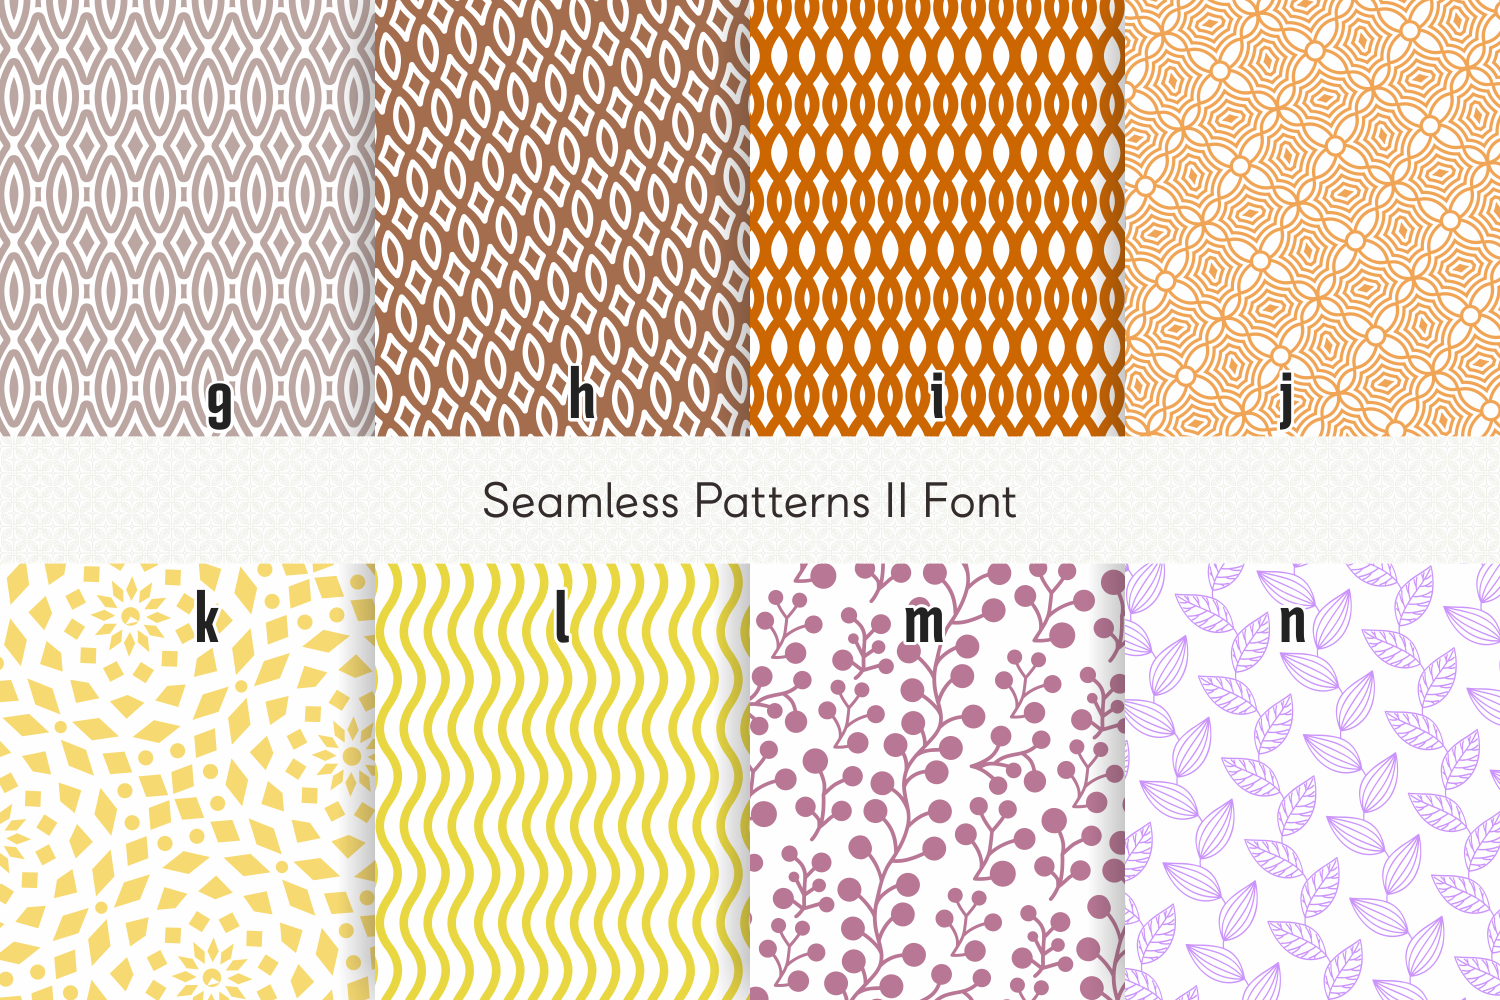 Seamless Patterns II